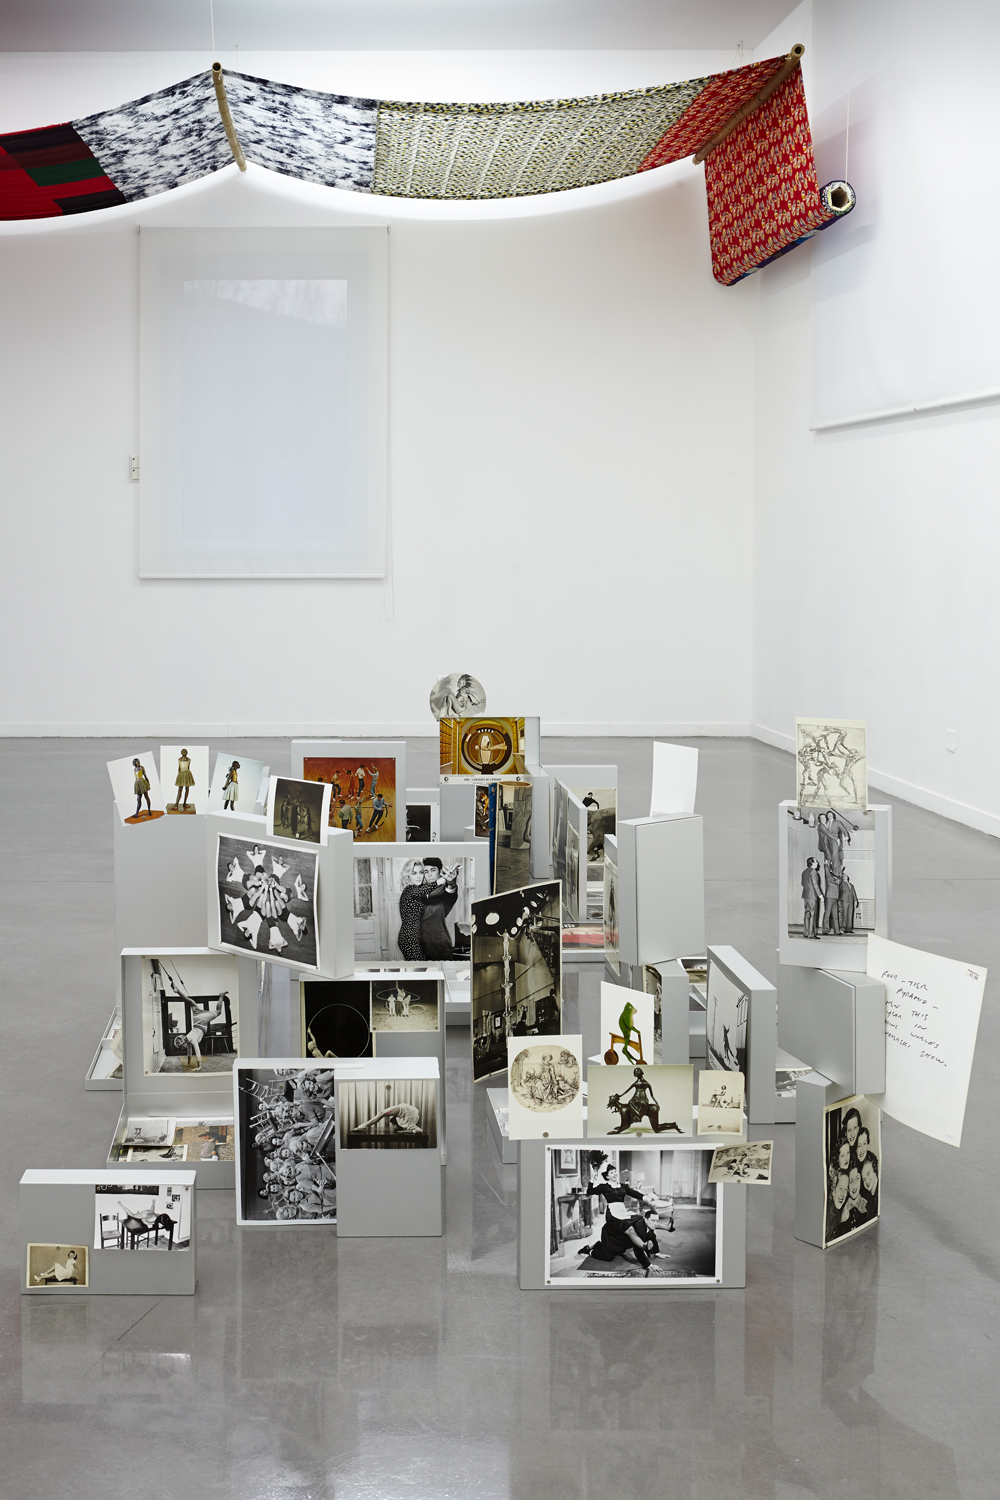 Pierre Leguillon: "Le musée des erreurs : Barnum", Pierre Leguillon, 2015, vue de salle. Musée régional d'art contemporain, Sérignan. Photo: Jean-Christophe Lett.